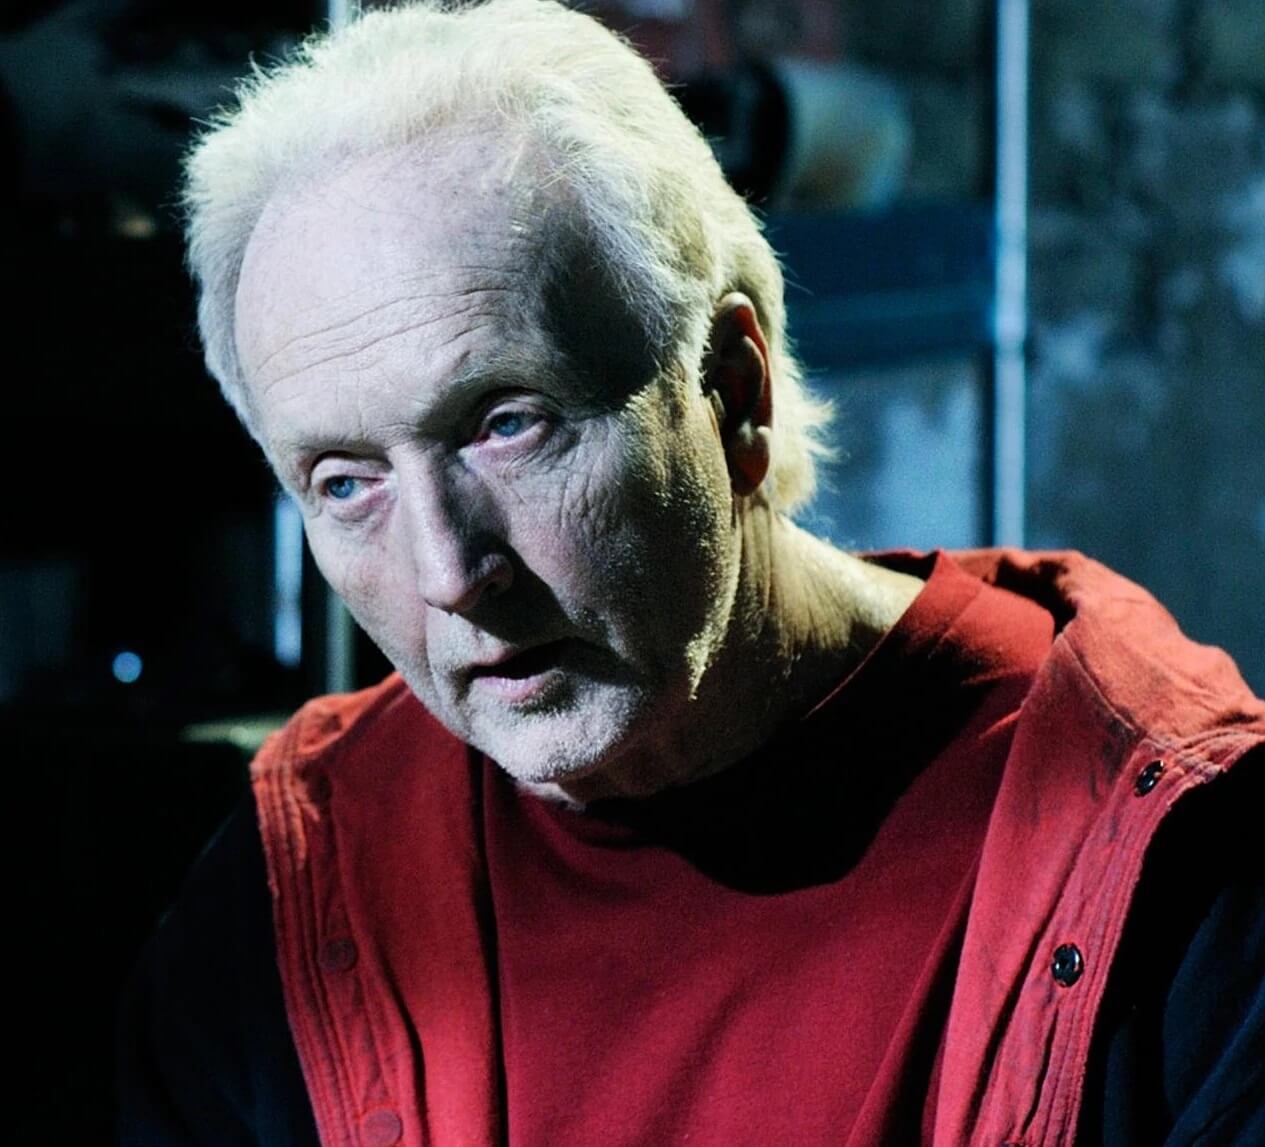 Tobin Bell as John Kramer Jigsaw Killer in Saw franchise